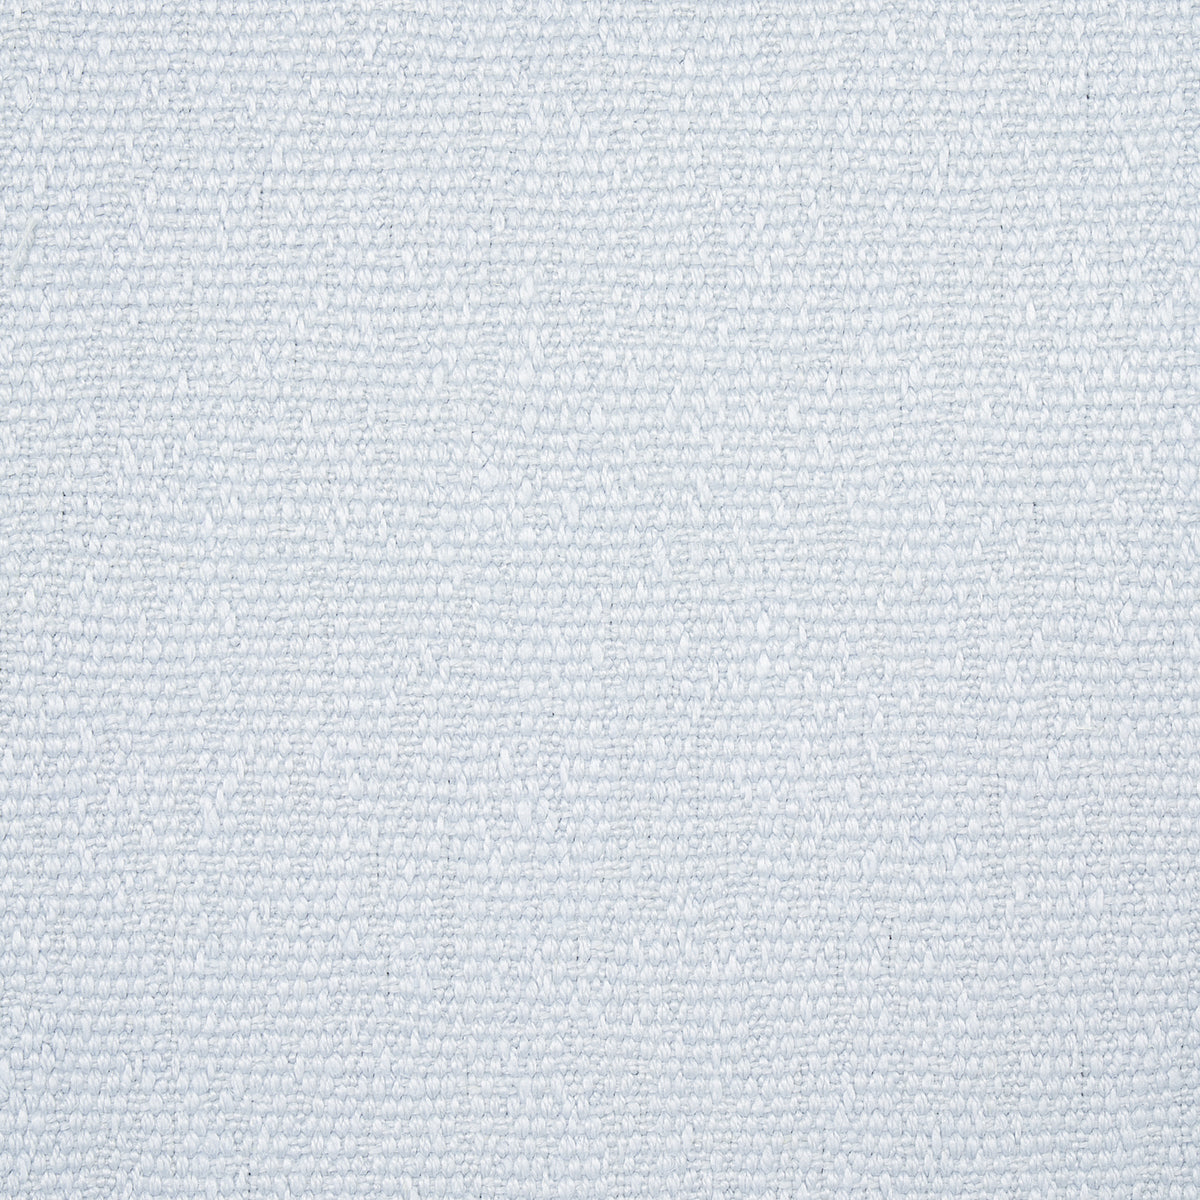 Purchase 75685 | Azulejos, Mist - Schumacher Fabric